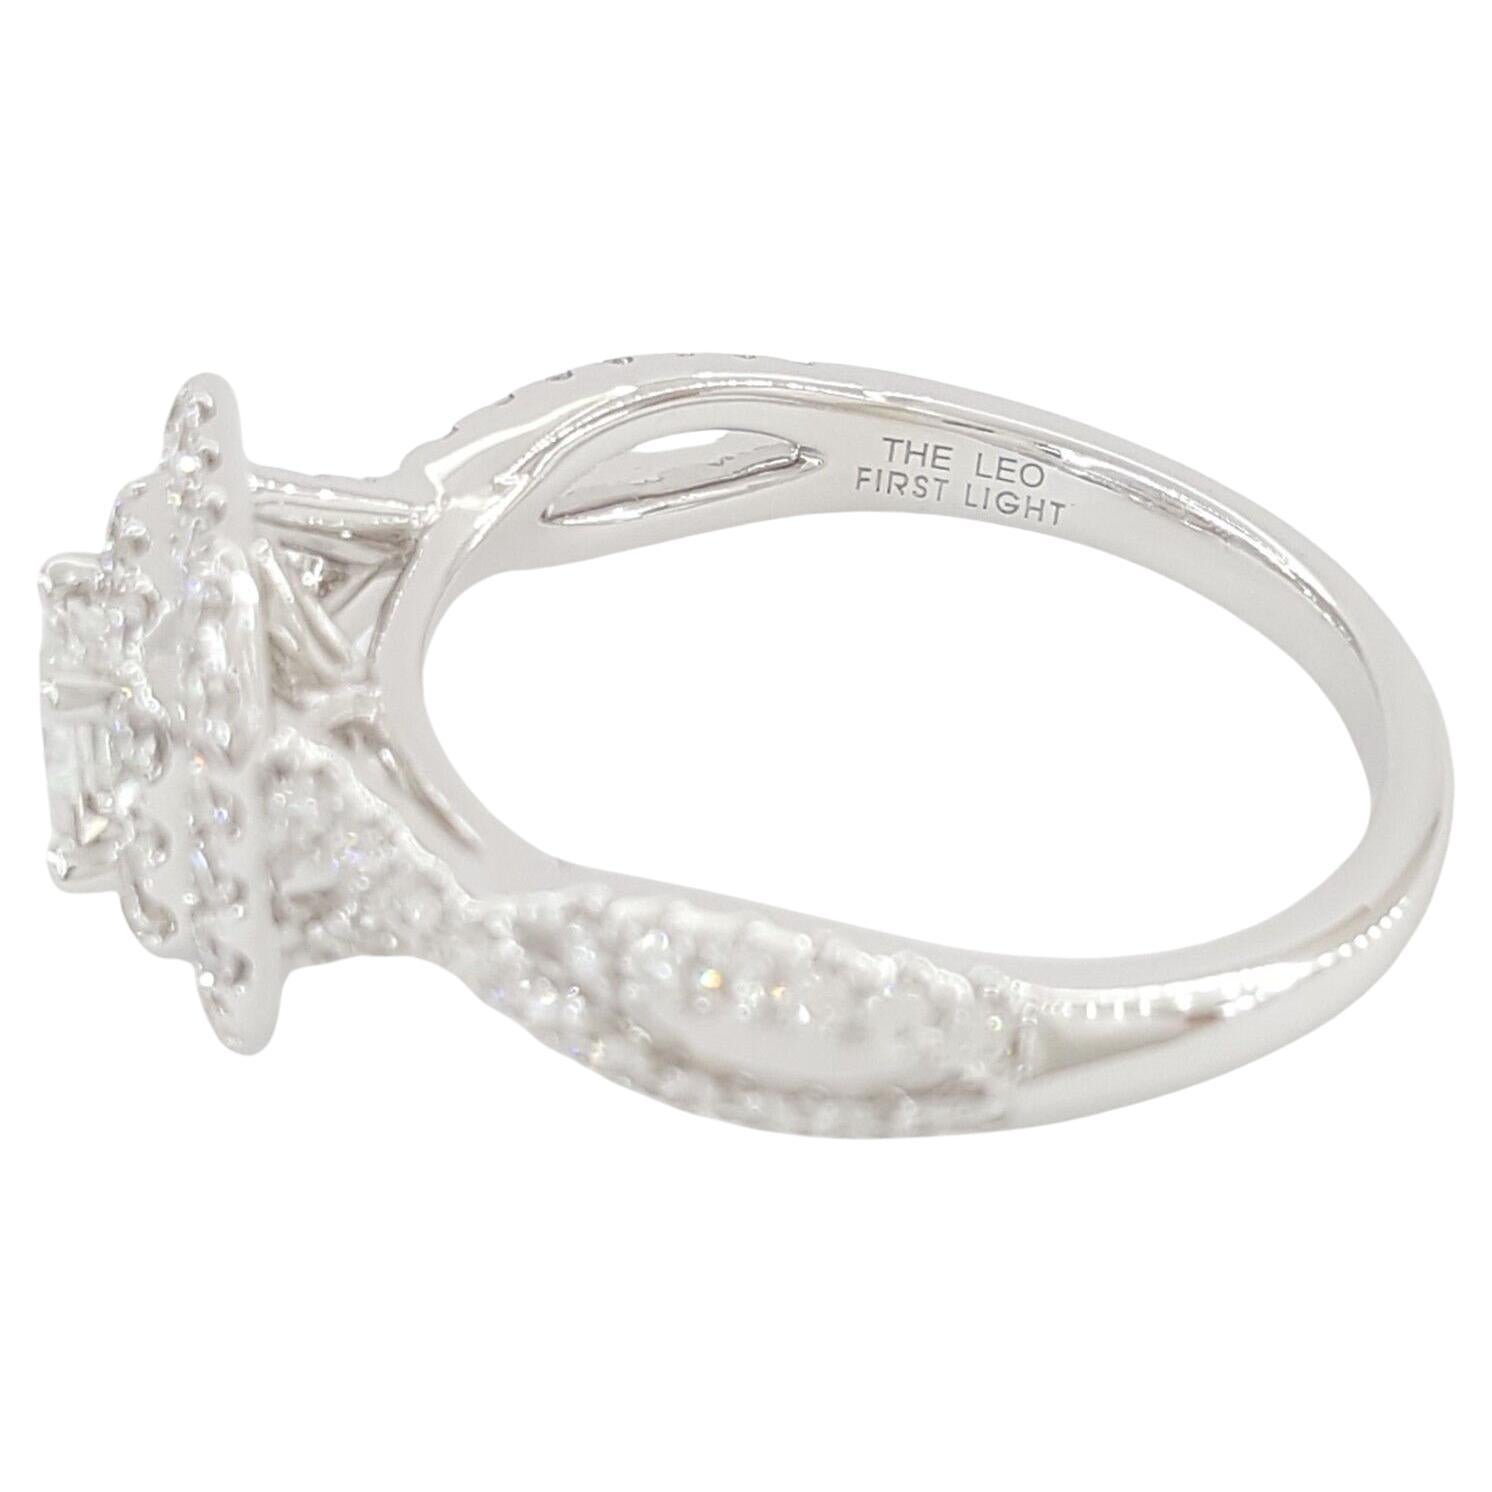  Leo First Light Diamant-Verlobungsring, ein exquisites Symbol für Liebe und Engagement.

Dieser bezaubernde Ring aus luxuriösem 14-karätigem Weißgold hat ein Gesamtgewicht von 7/8 Karat und verspricht zeitlose Eleganz und Raffinesse. Er wiegt 4,7